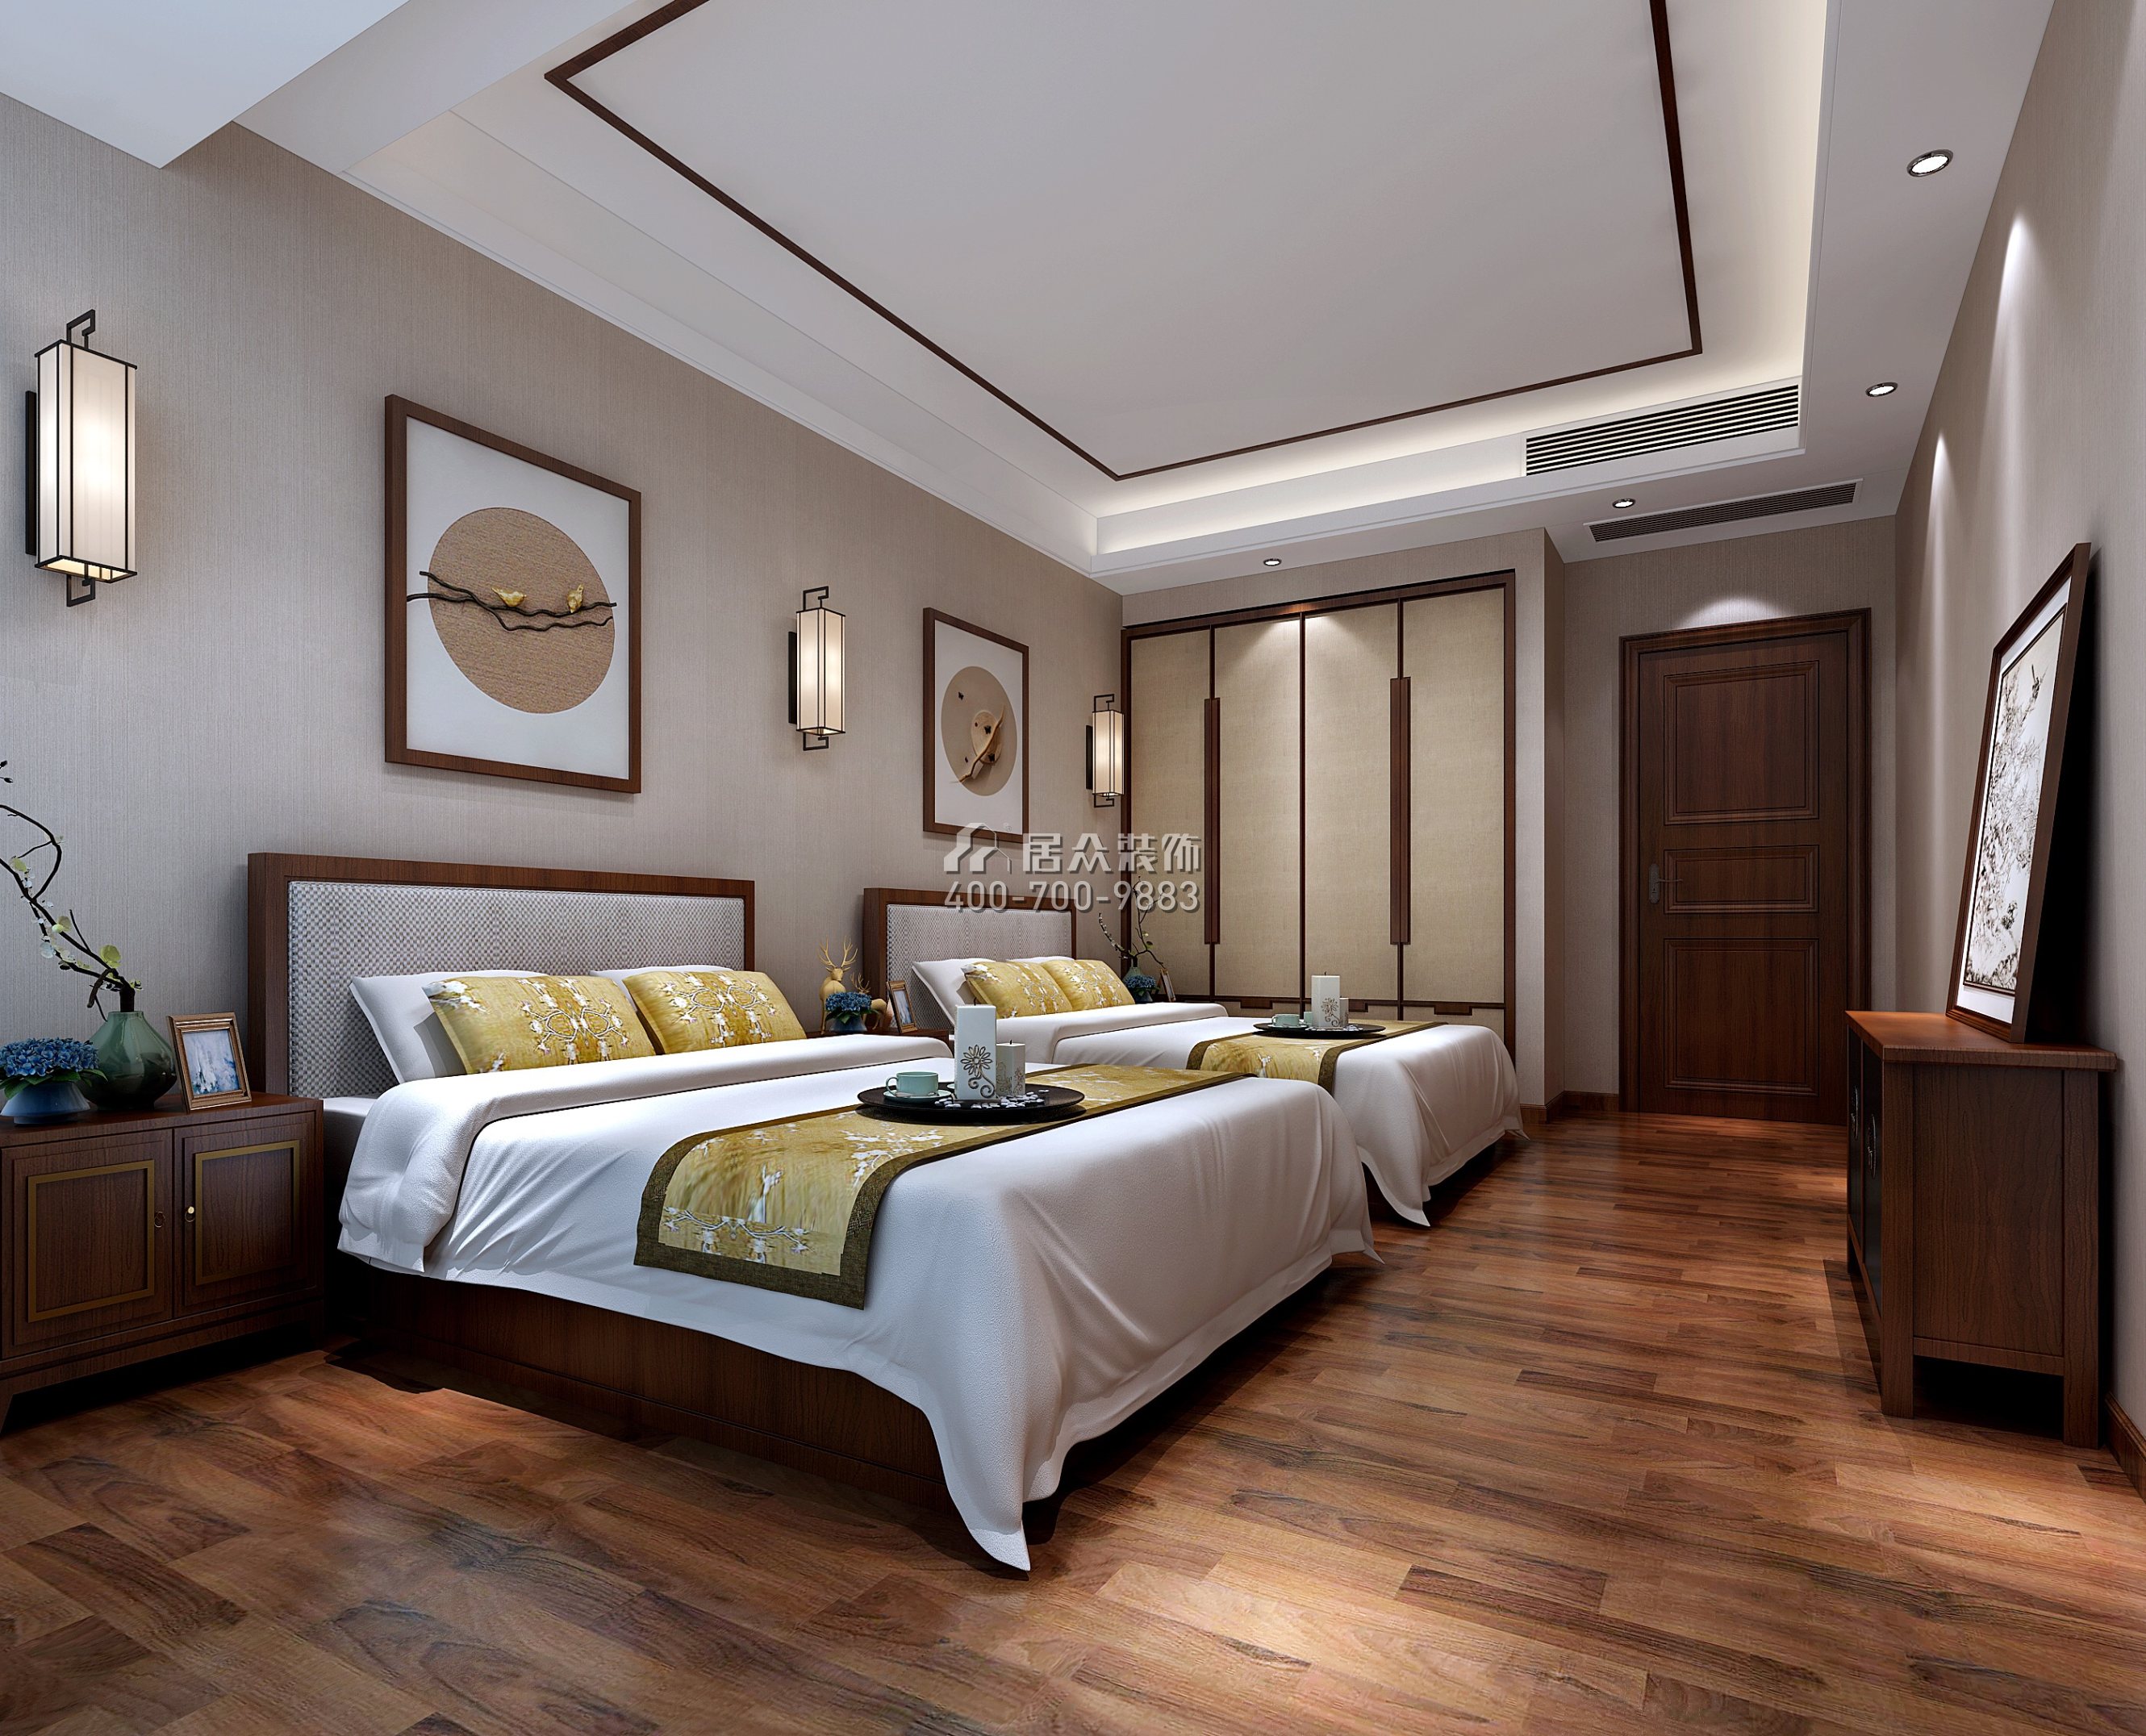 中洲湾上花园175平方米中式风格平层户型卧室装修效果图